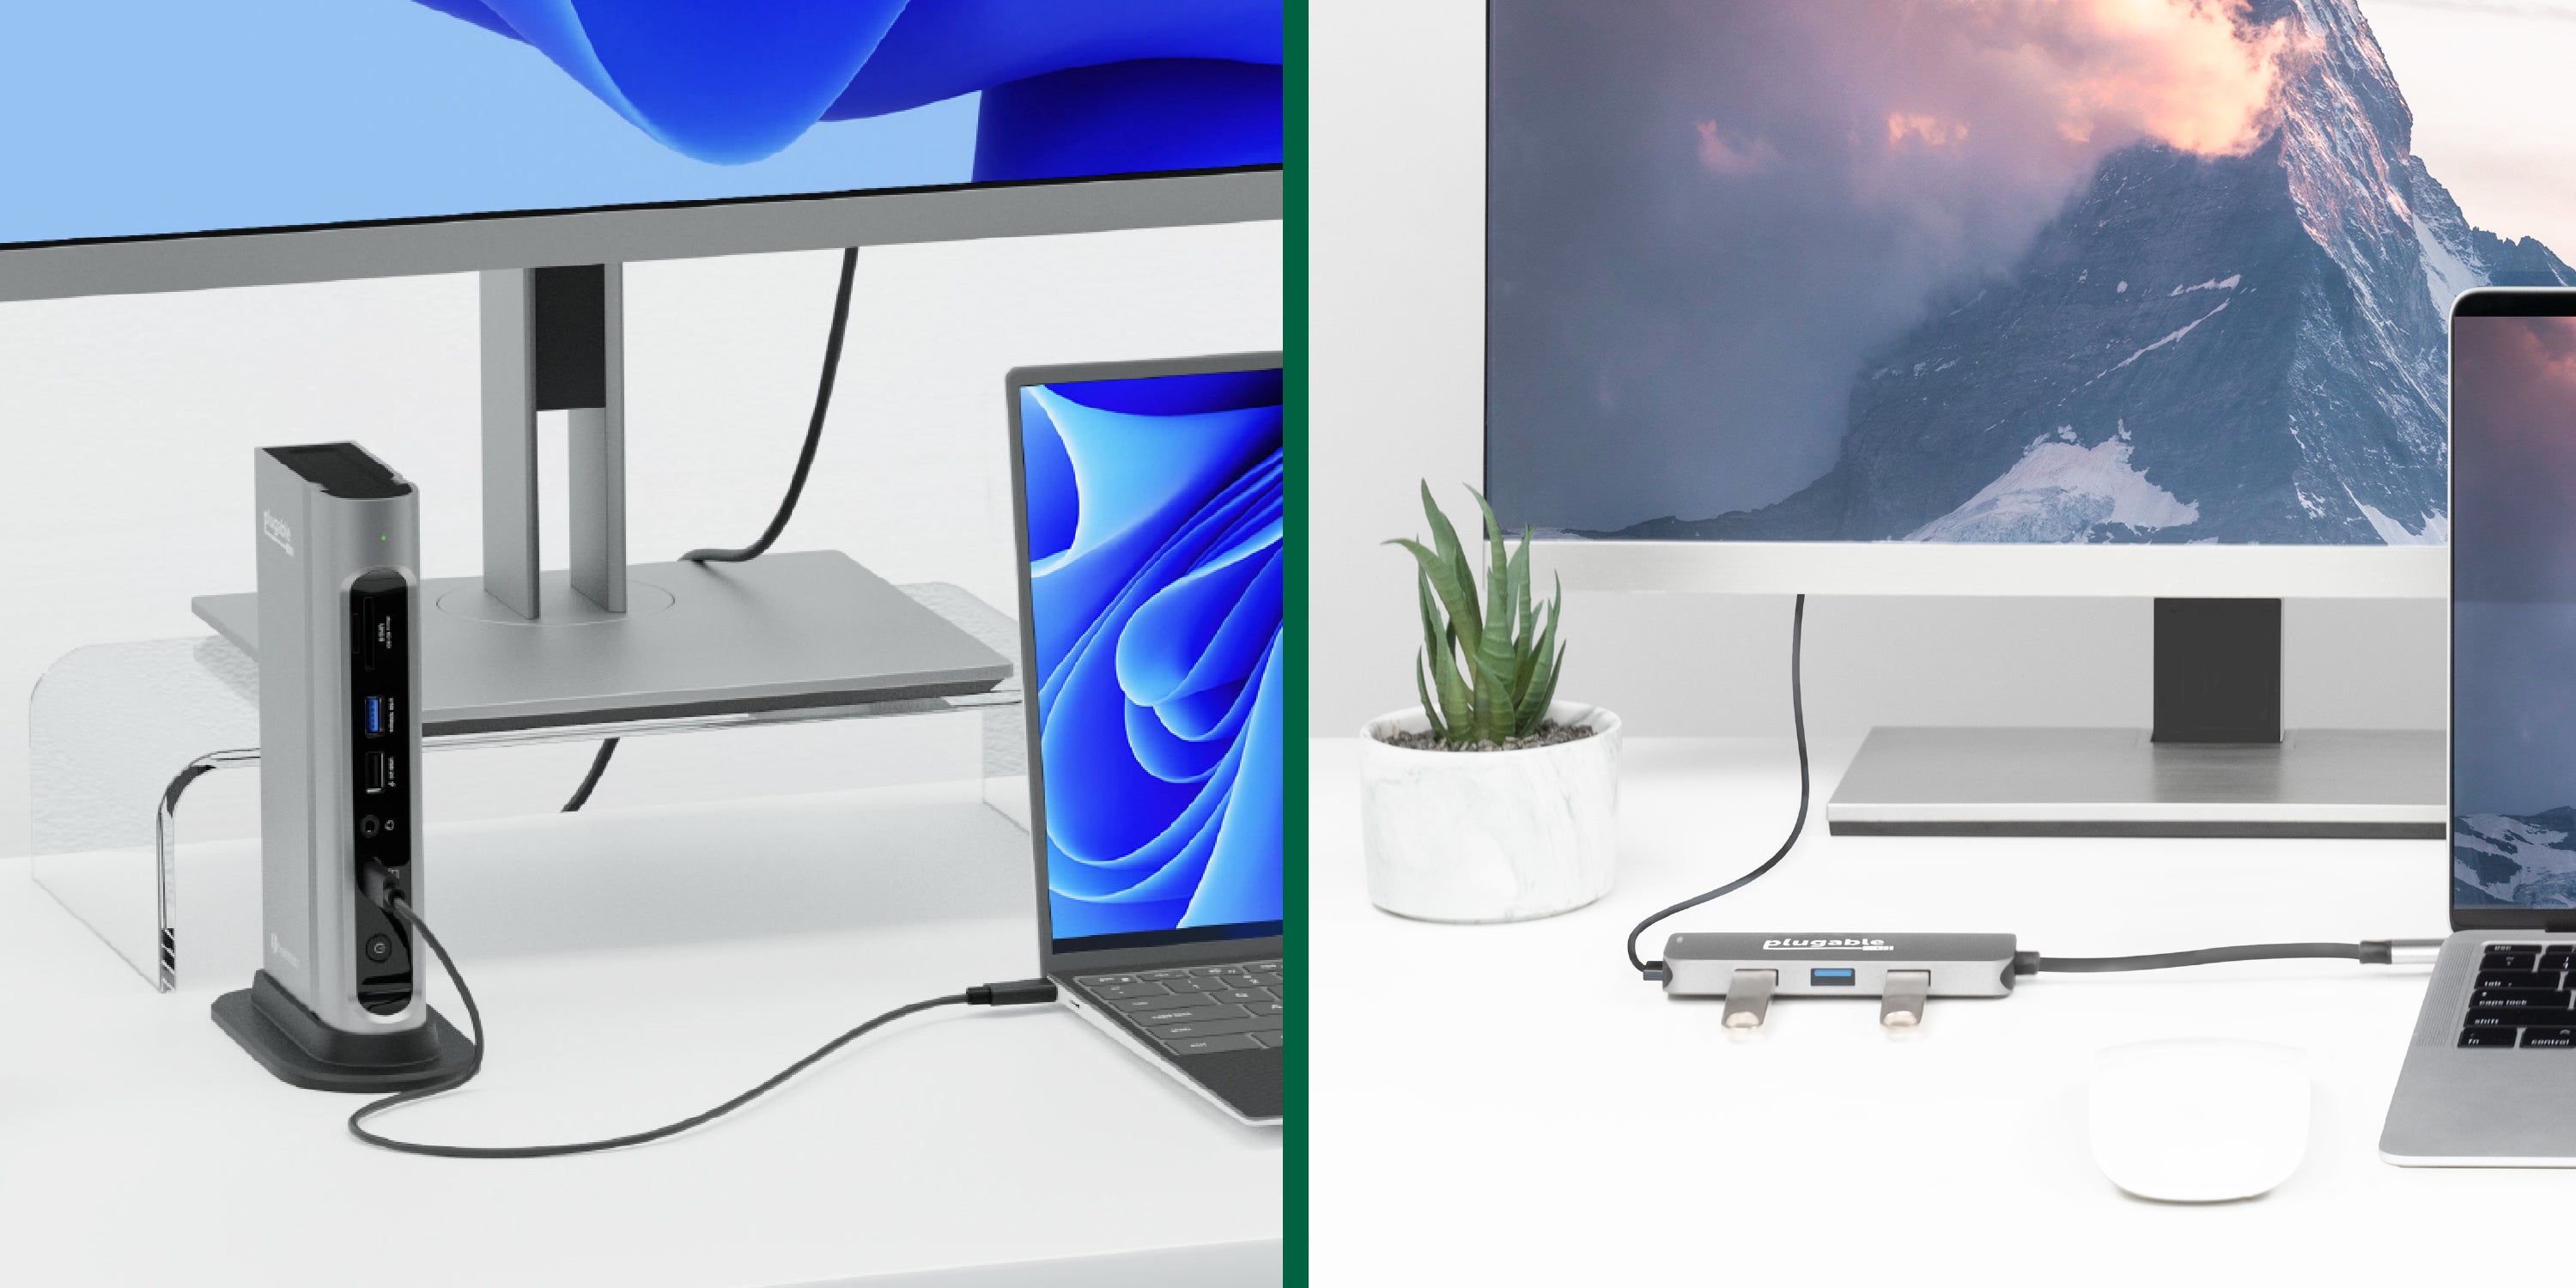 Station d'accueil USB-C 2 en 1 et support pour PC portable - Port Designs